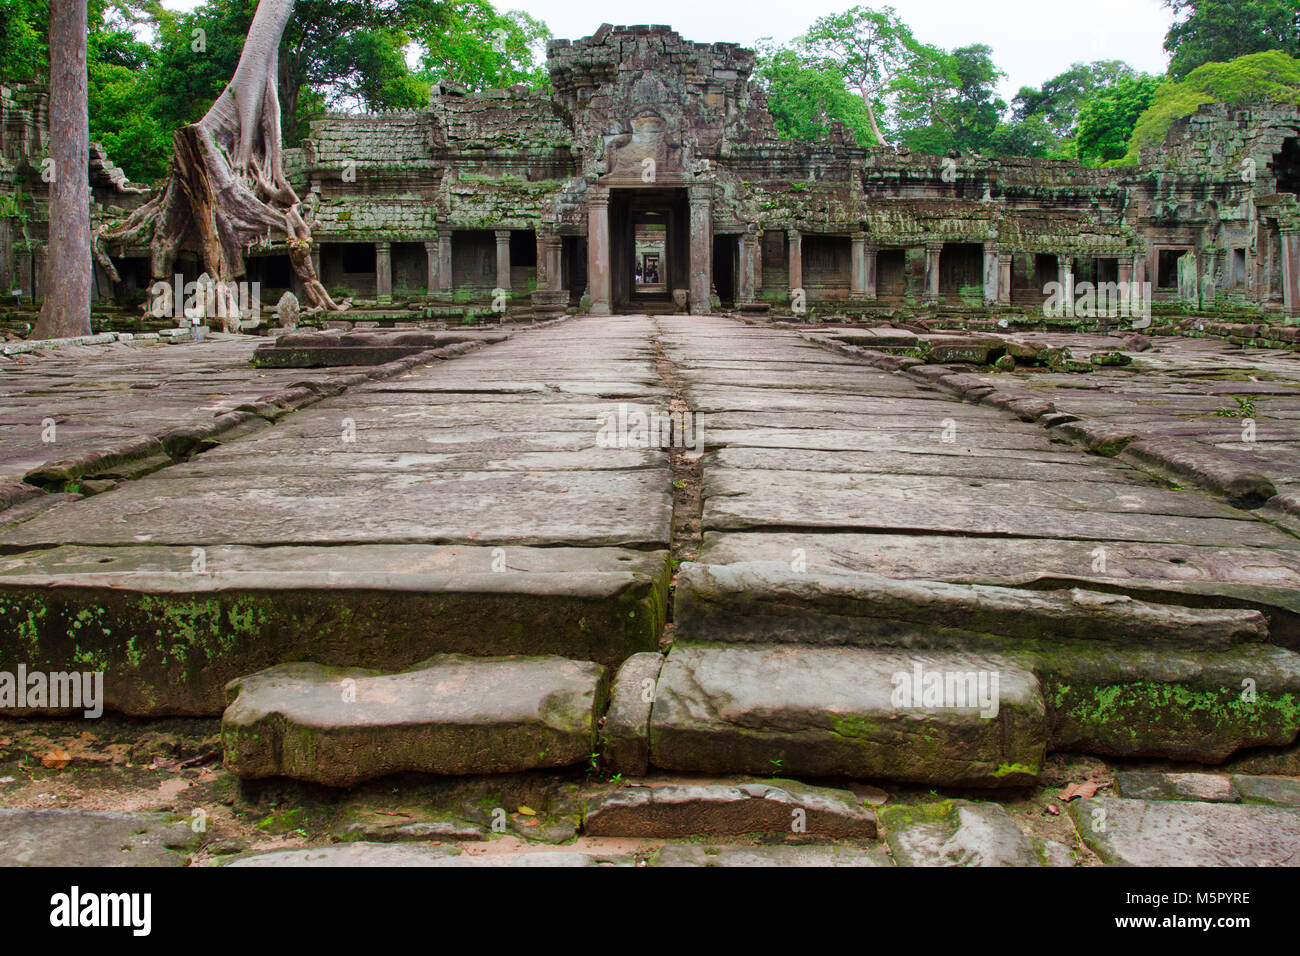 Angkor Wat, un site du patrimoine mondial de l'ONU au Cambodge. Rendu célèbre dans le film Lara Croft : Tomb Raider. Banque D'Images